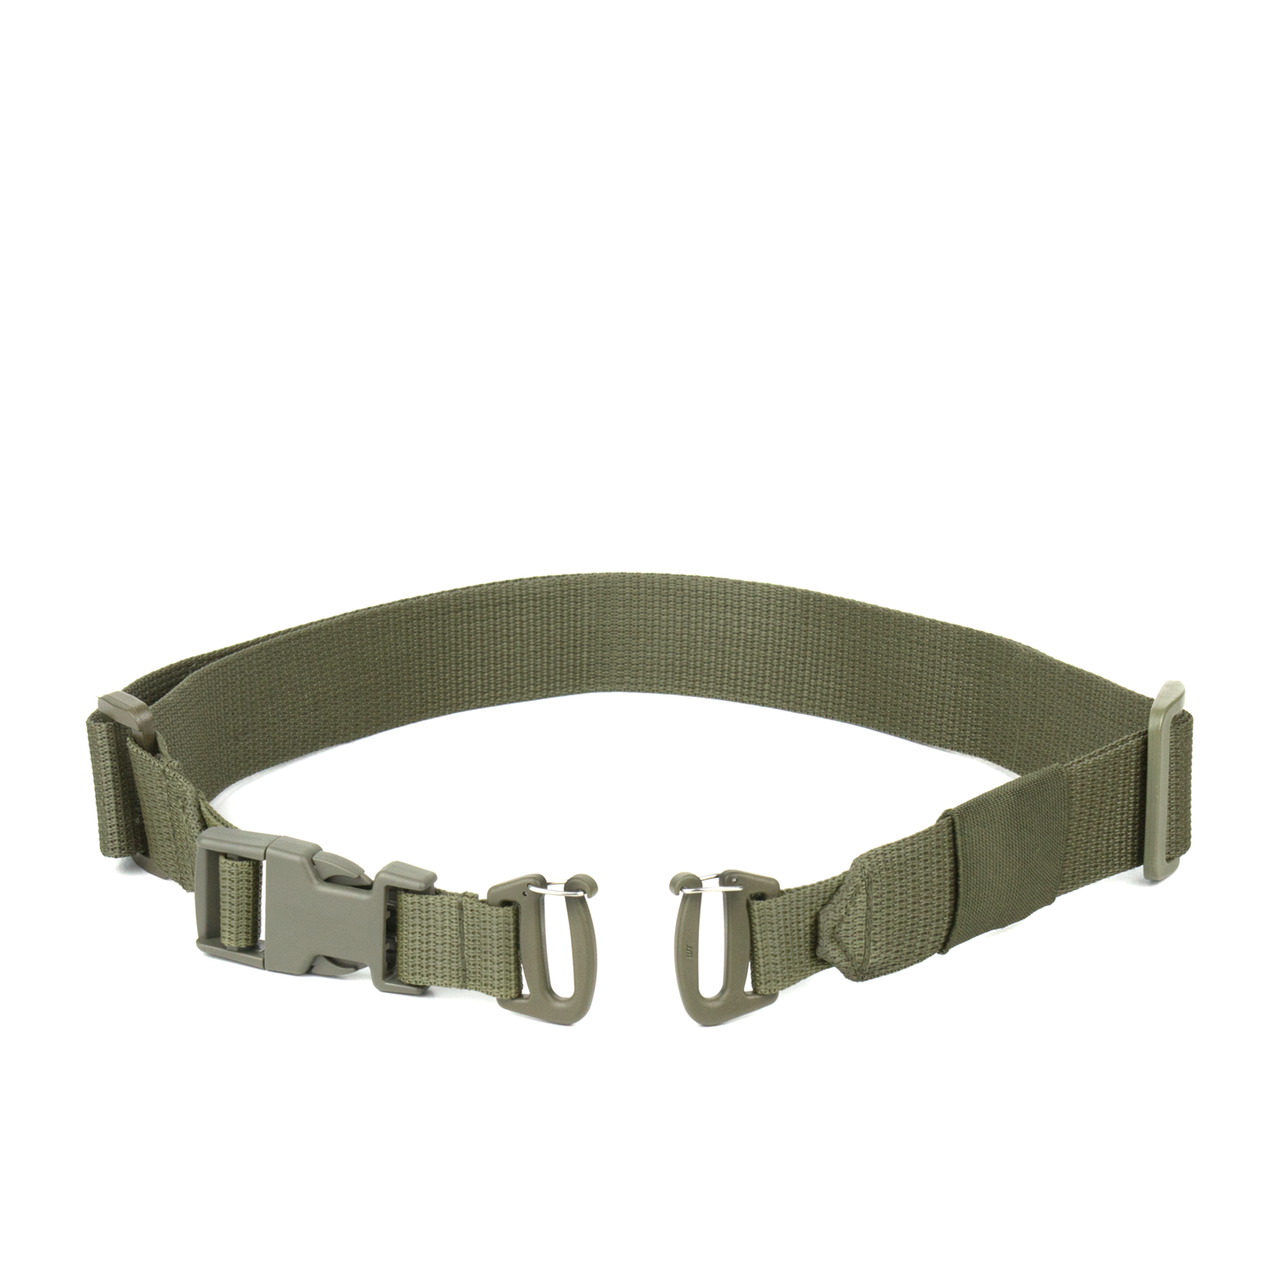 ЗІП - Ремінь для сумки-напашника або органайзеру Dozen Removable Strap For Pouch "Olive" (ширина - 40 мм)